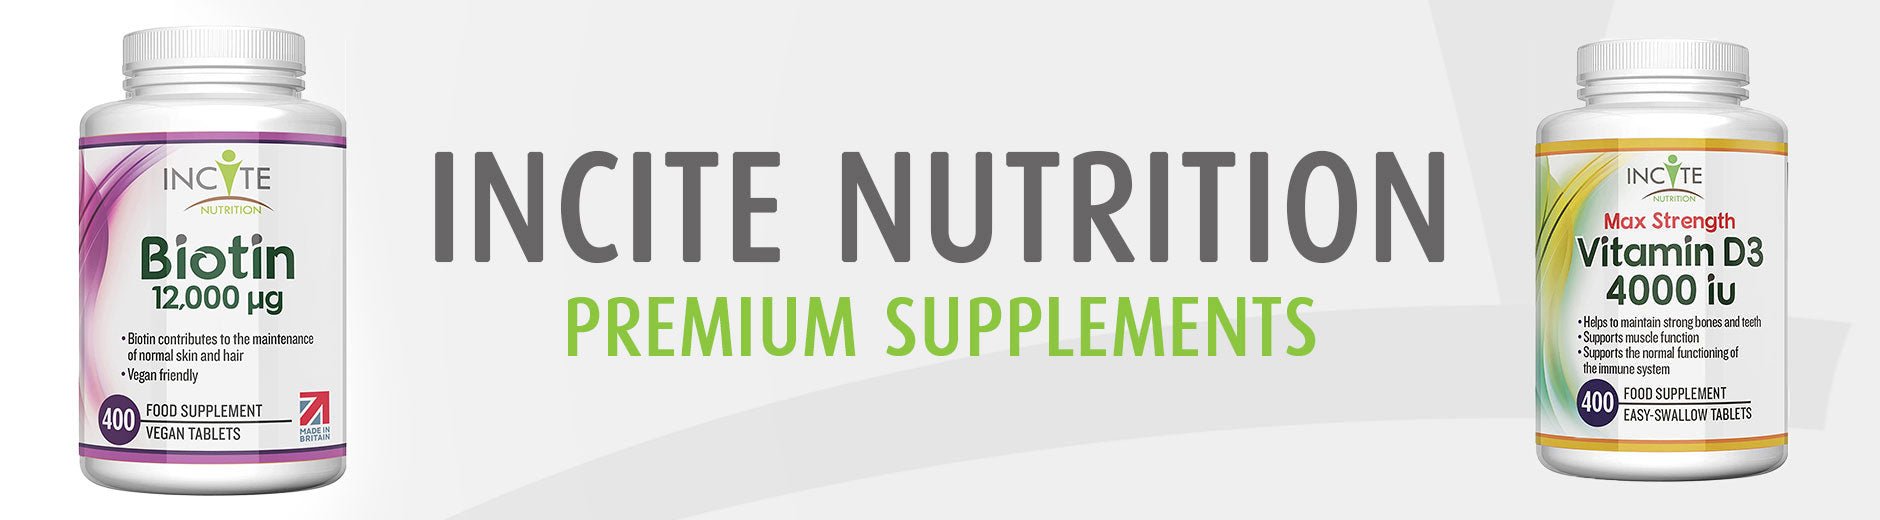 Incite Nutrition Premium Supplements